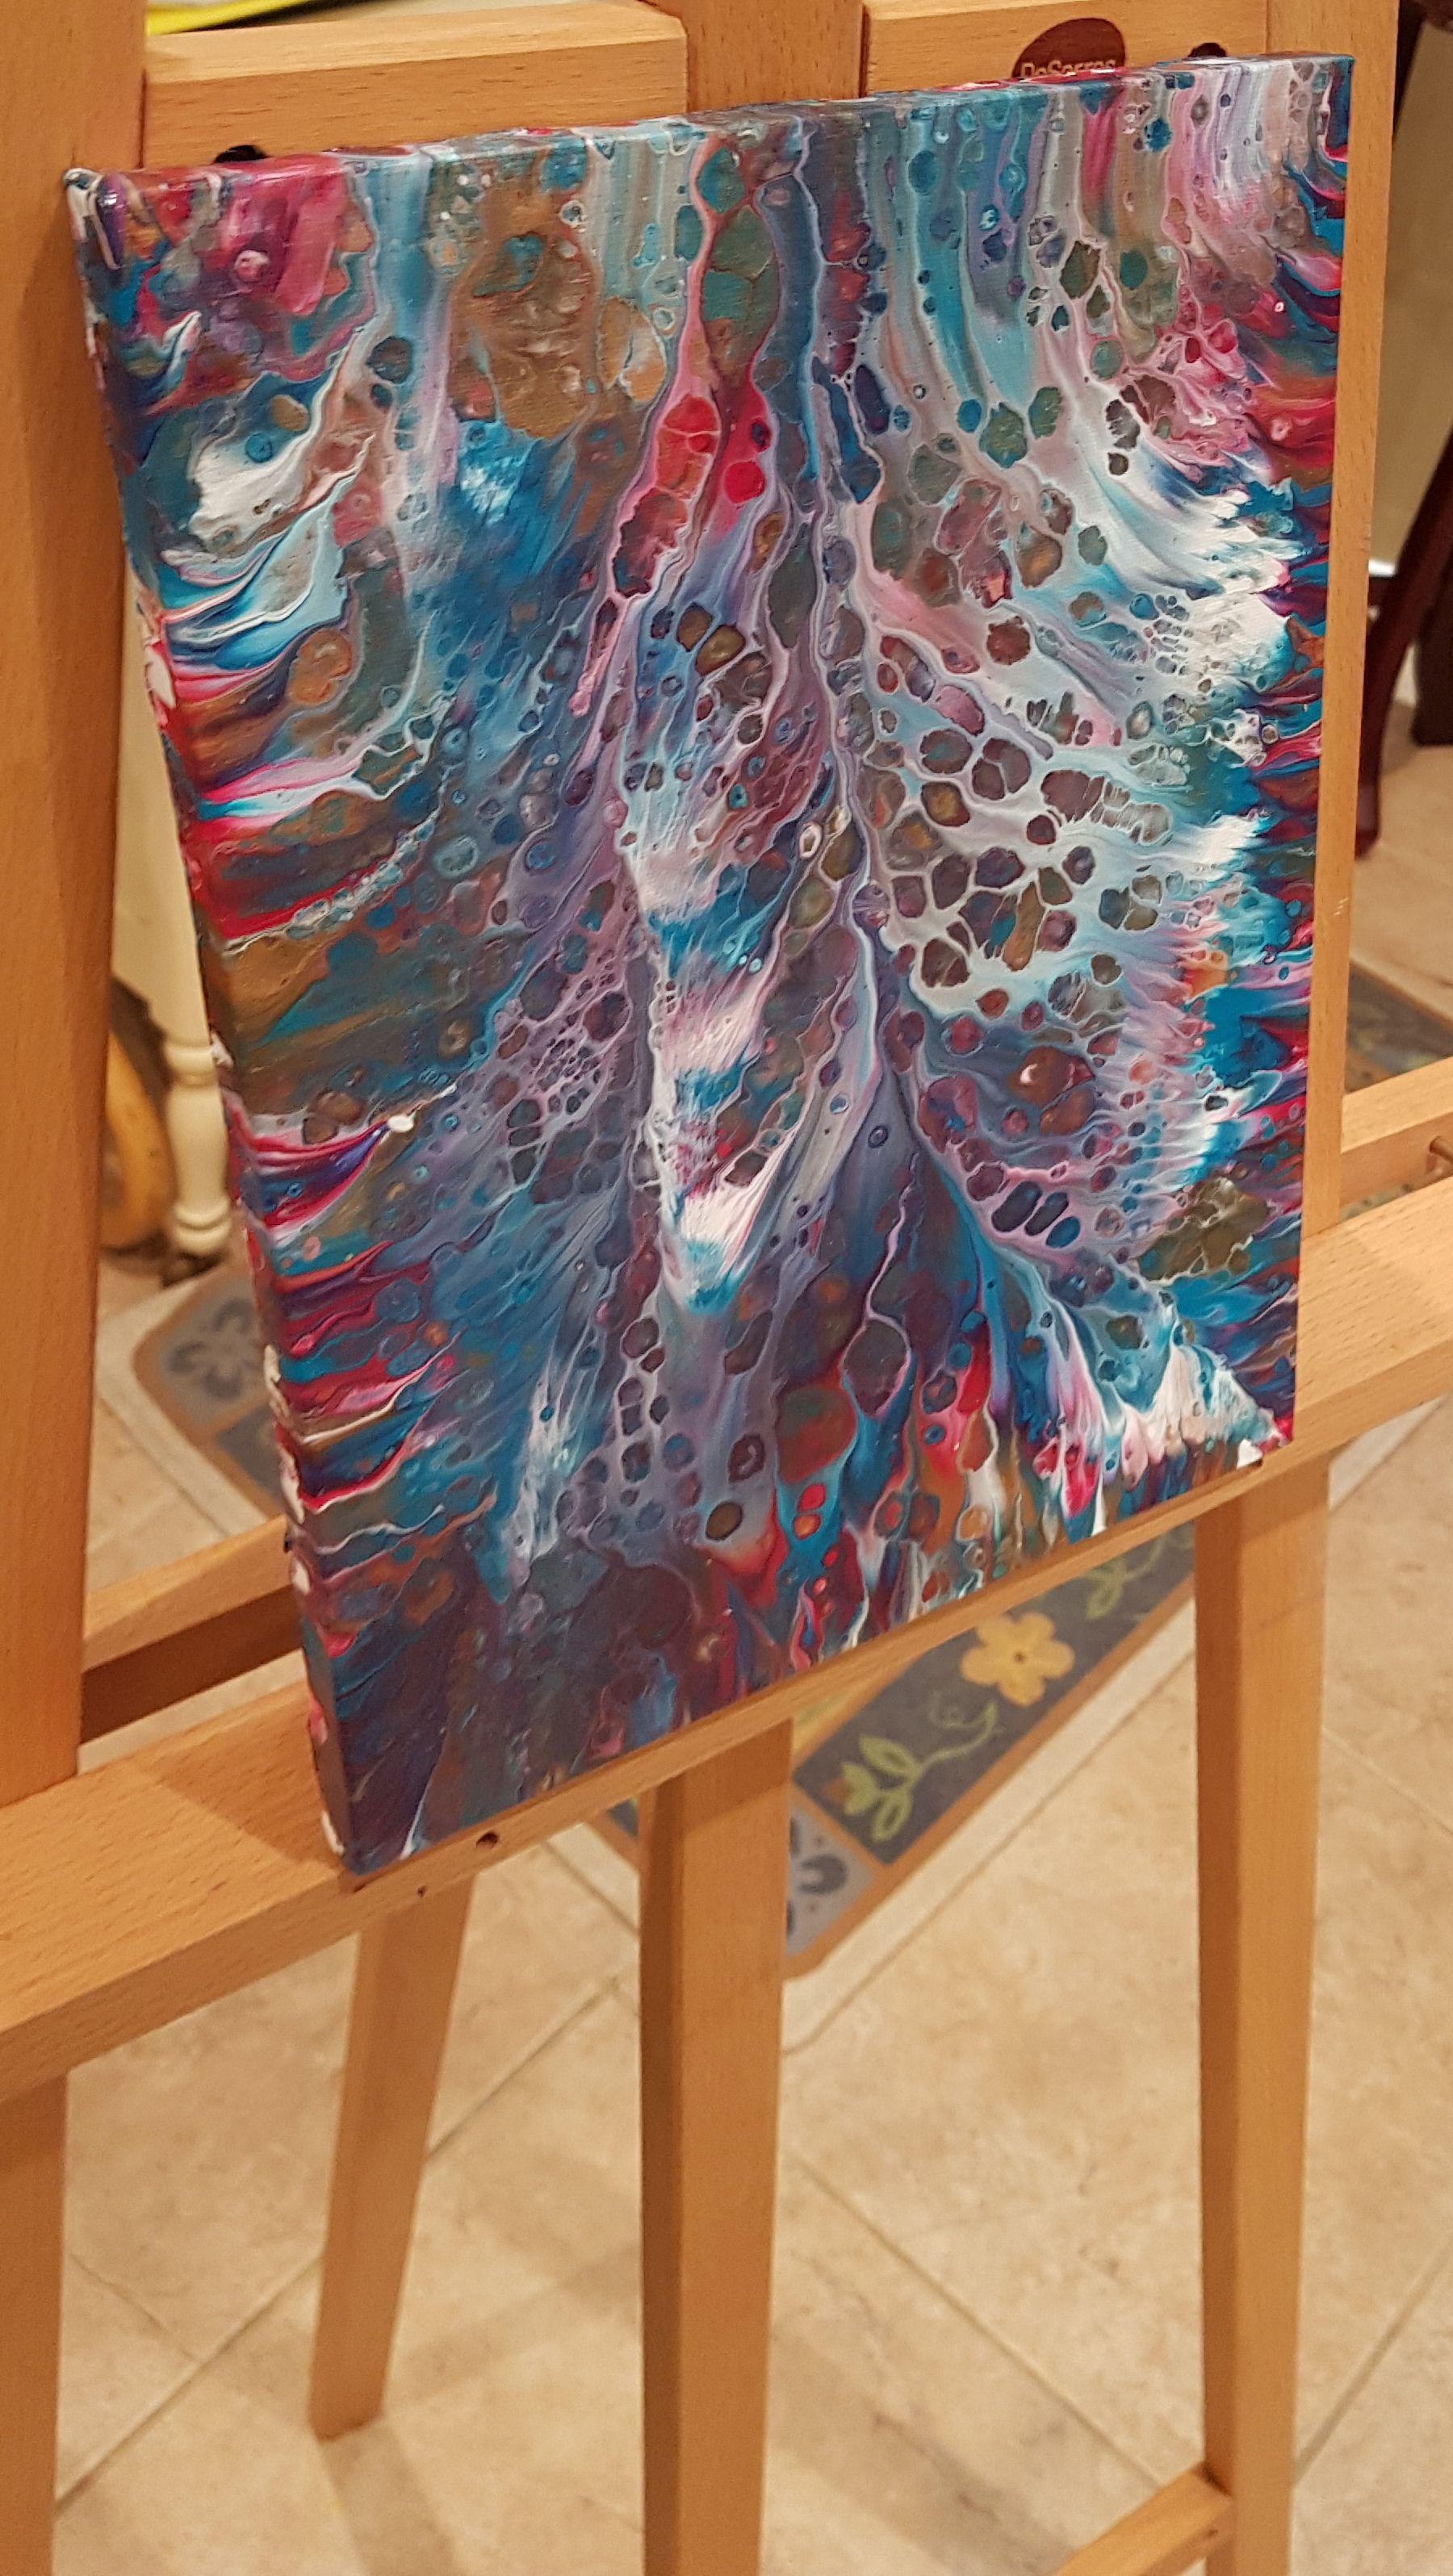 Mermaid Cove ist ein kühnes abstraktes Gemälde mit heftigen, vom Meer inspirierten Bewegungen und einer beruhigenden, komplementären Farbgebung.    Titel: Meerjungfrauenbucht  Abmessungen: 9